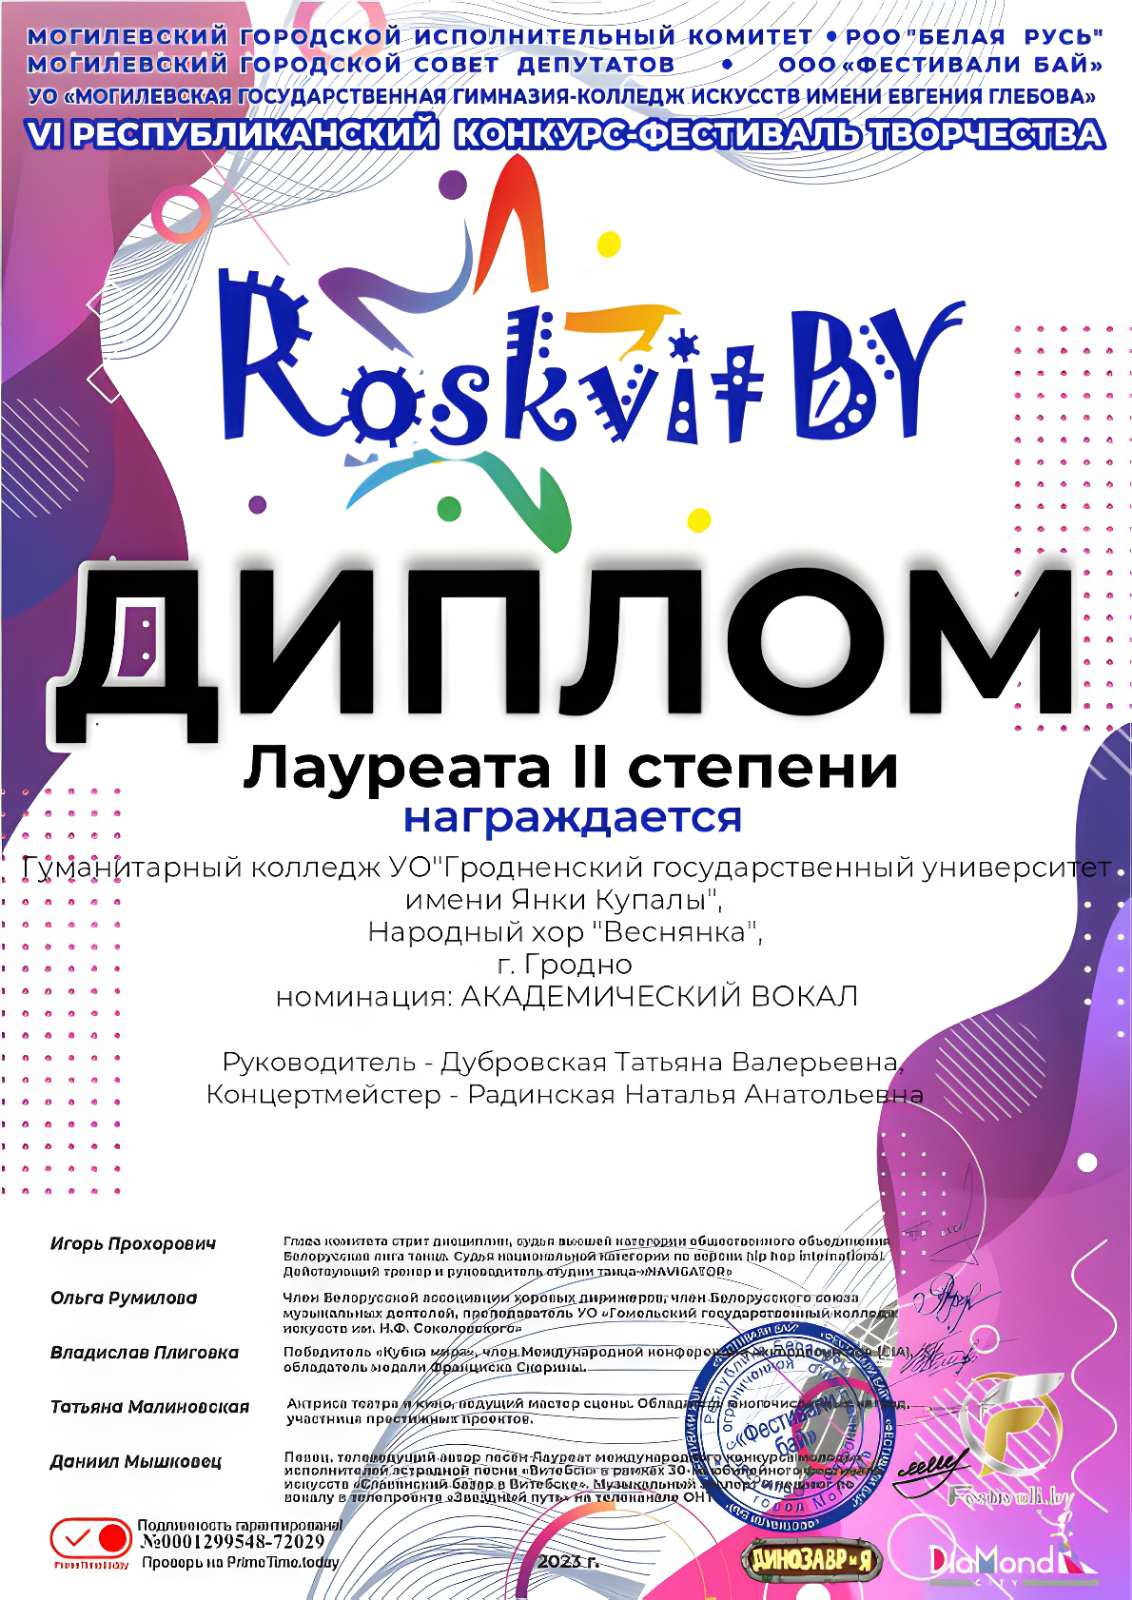 Купалаўцы сталі лаўрэатамі VI Рэспубліканскага конкурсу-фестывалю творчасці "Roskvit.by"